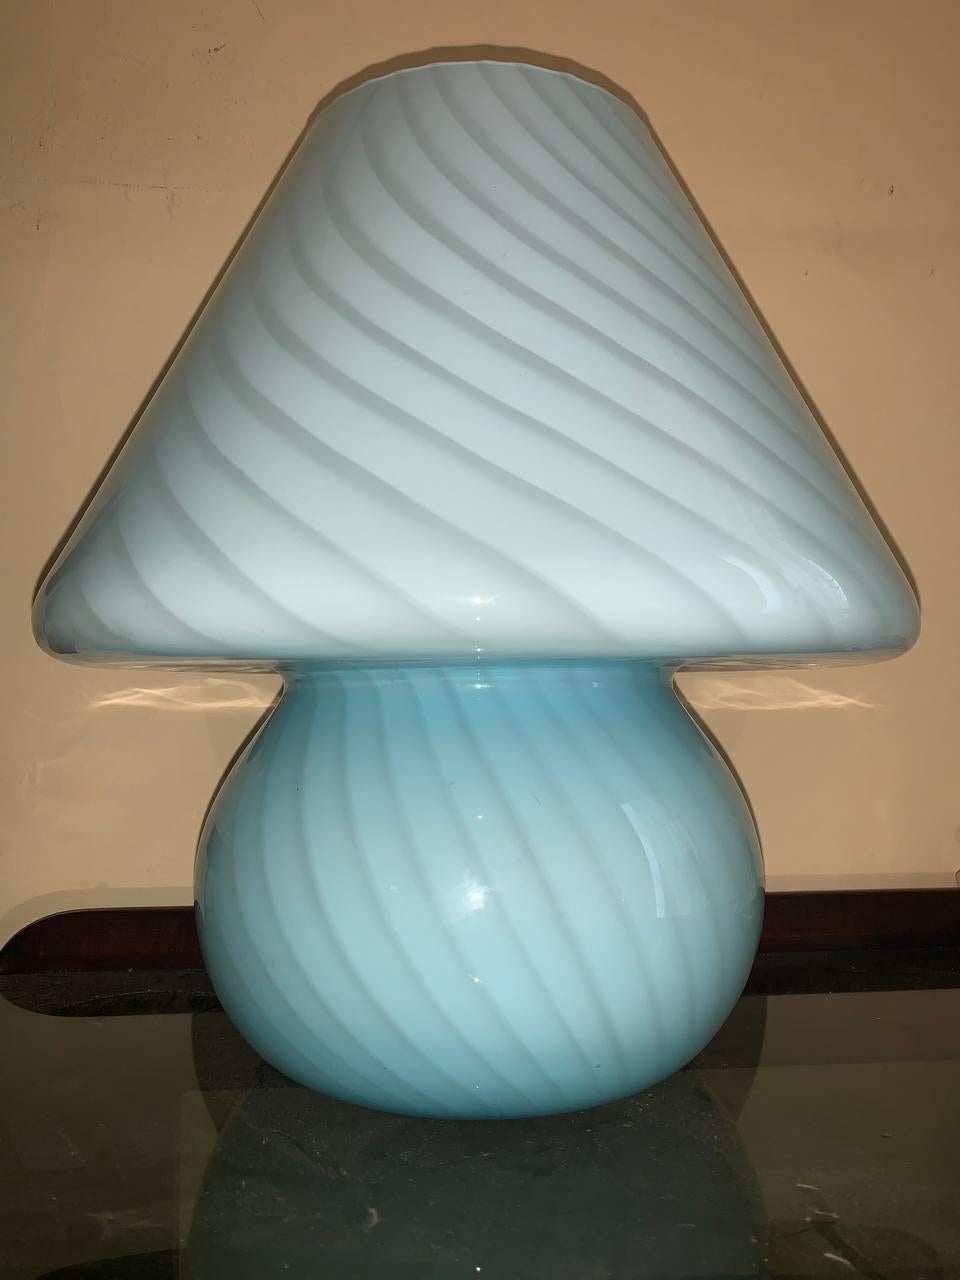 Exceptionnellement belle et grande lampe champignon originale en verre de Murano par Paolo Venini d'Italie.
Version large de 38 cm.
Diamètre : 37 cm
Très bien conservé.
Superbe effet de patrouille.
1 version E27.
* Le câble de cet article peut être